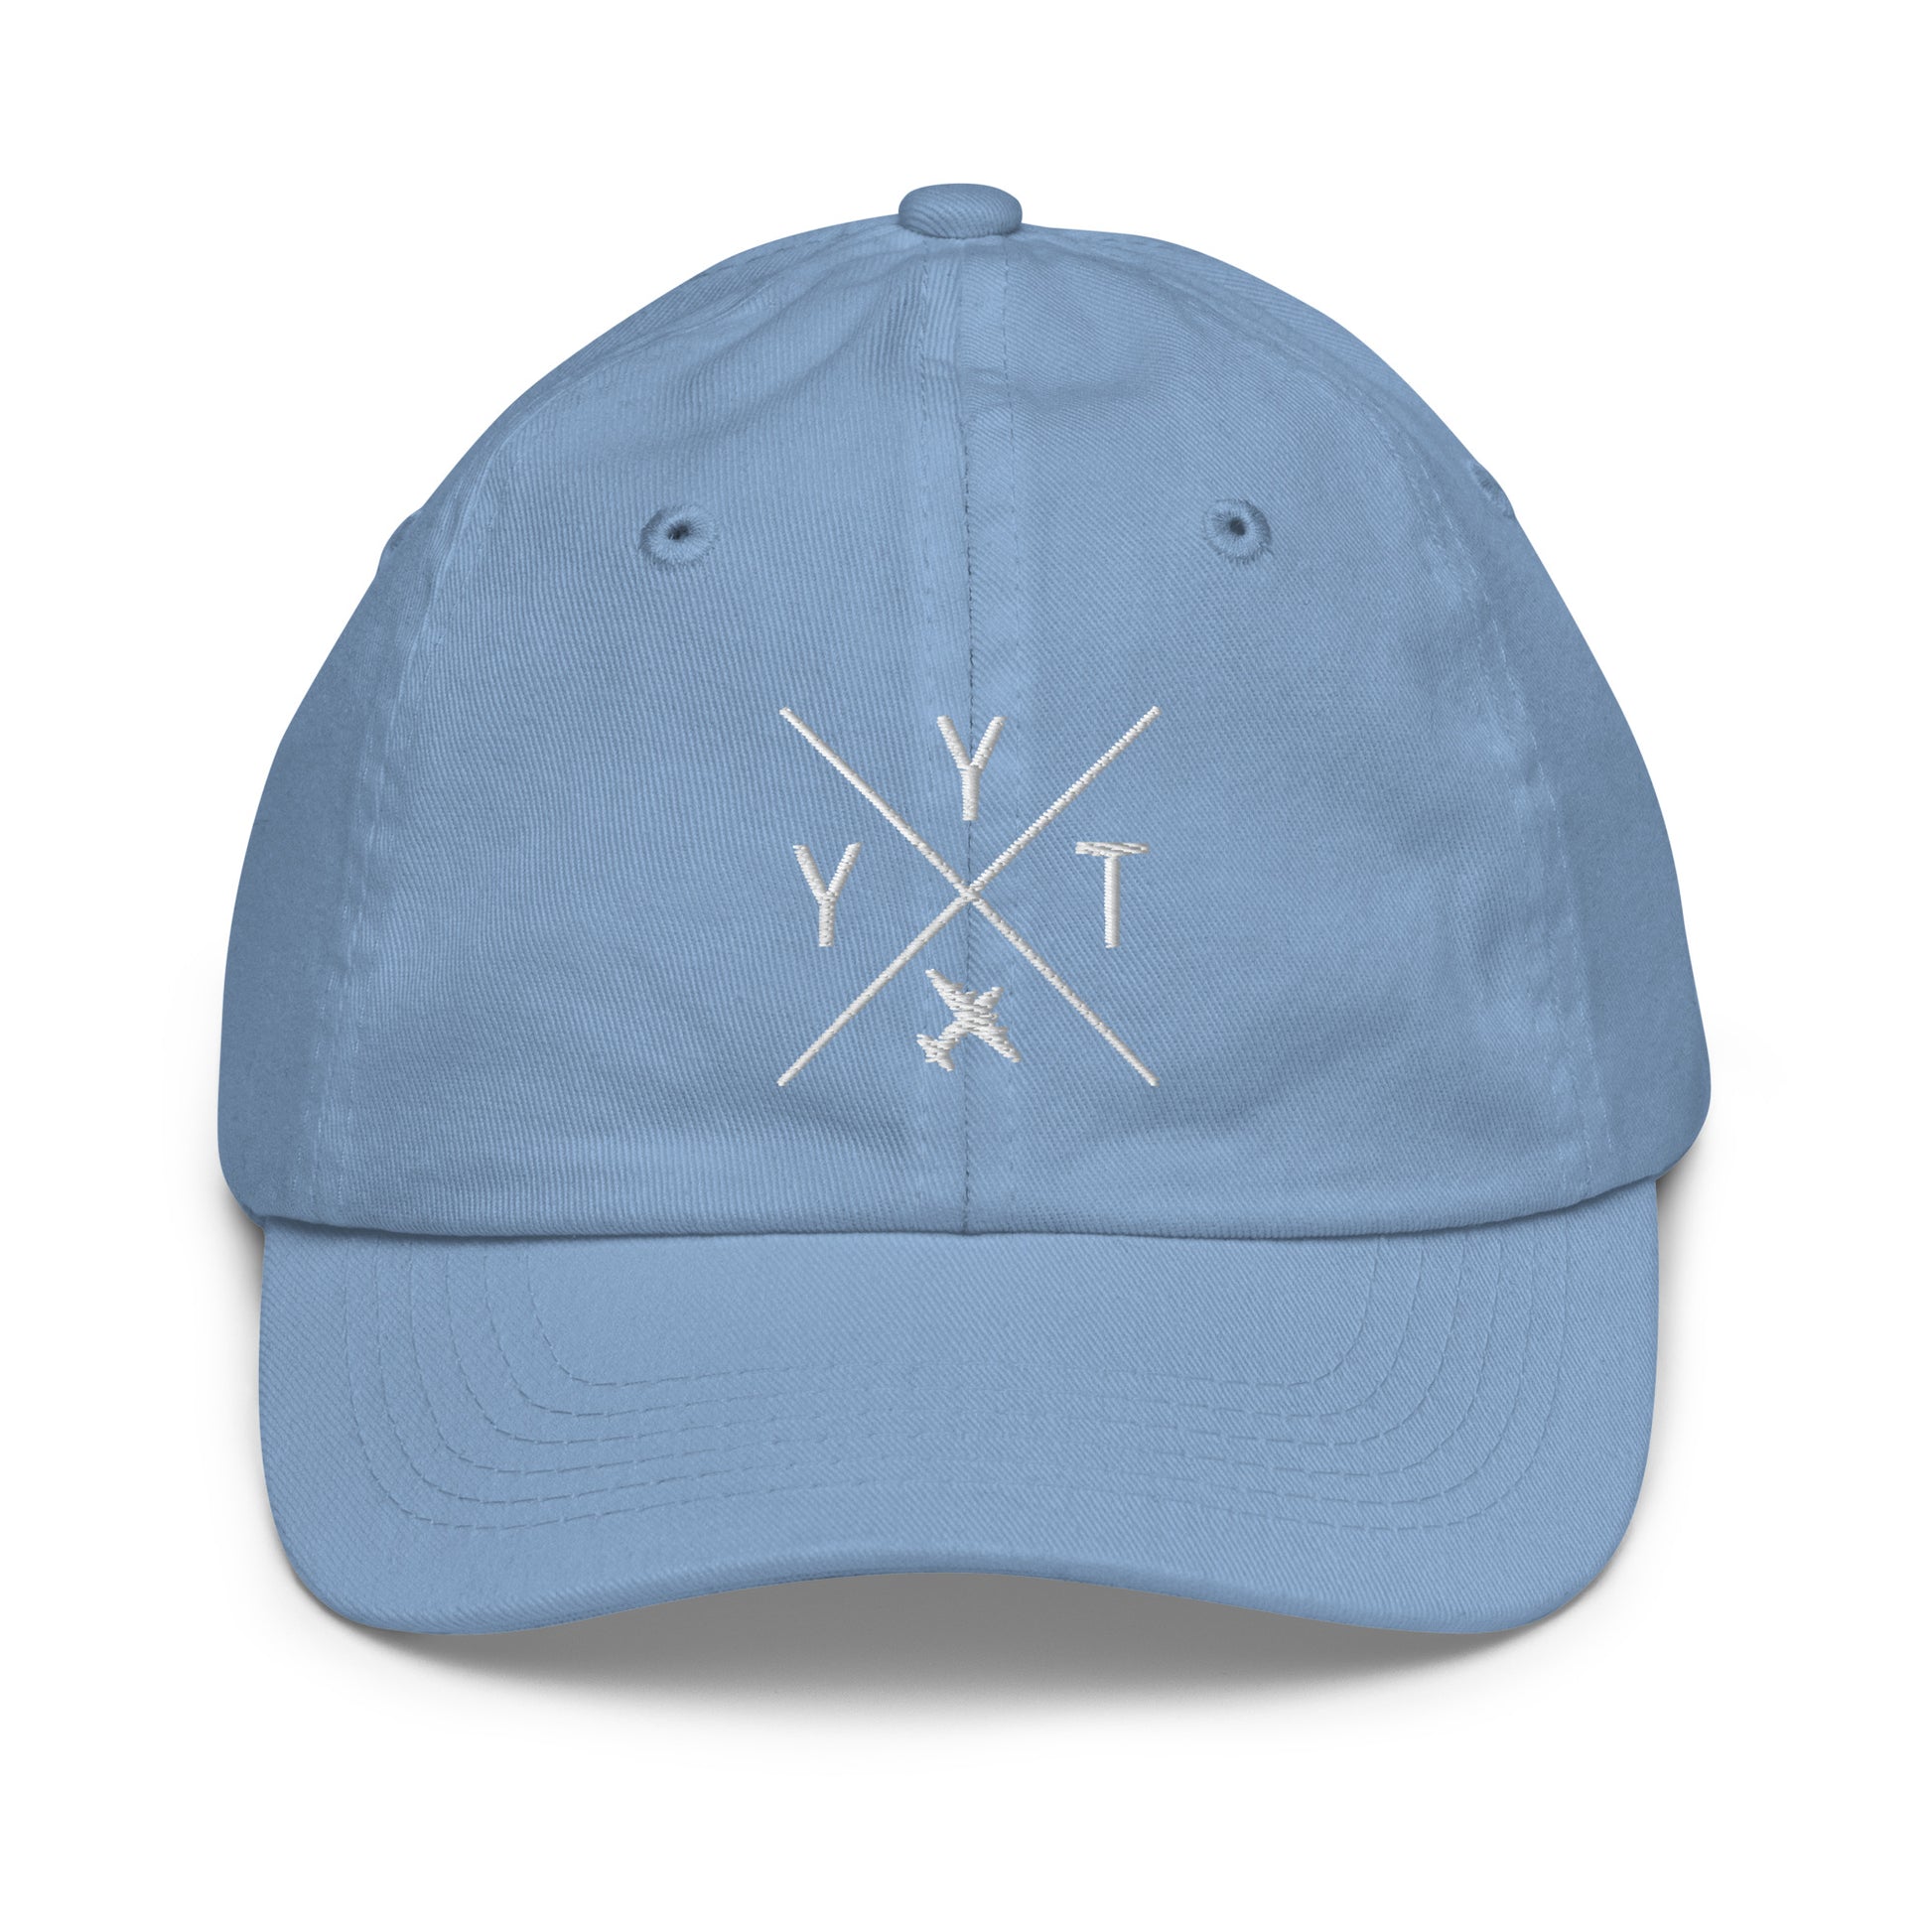 Crossed-X Kid's Baseball Cap - White • YYT St. John's • YHM Designs - Image 22